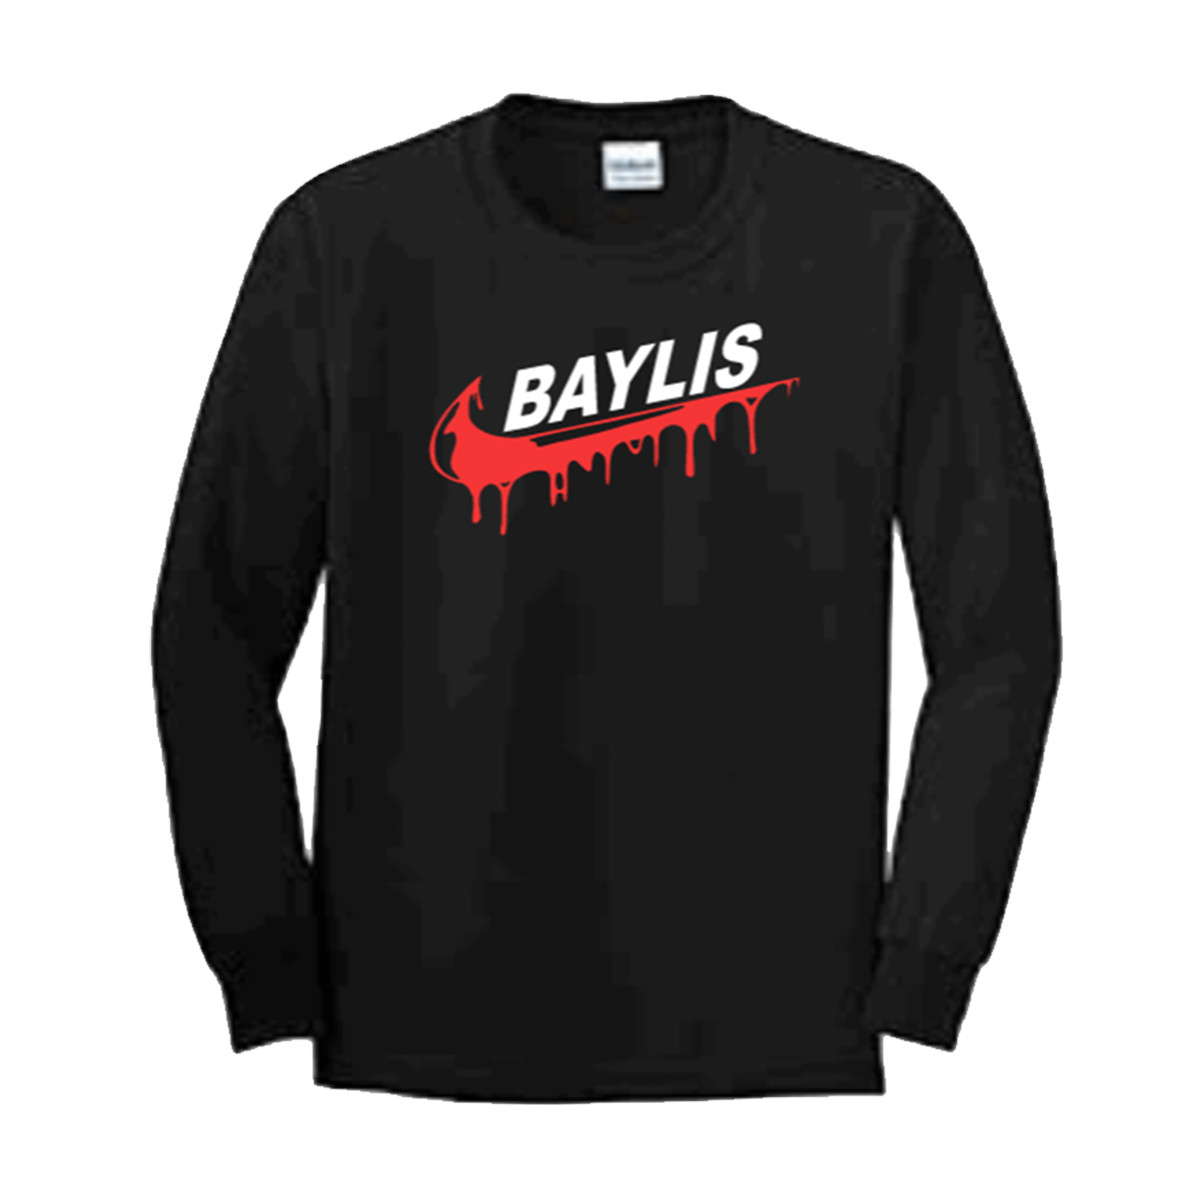 Baylis Swoosh Long Sleeve T-Shirt